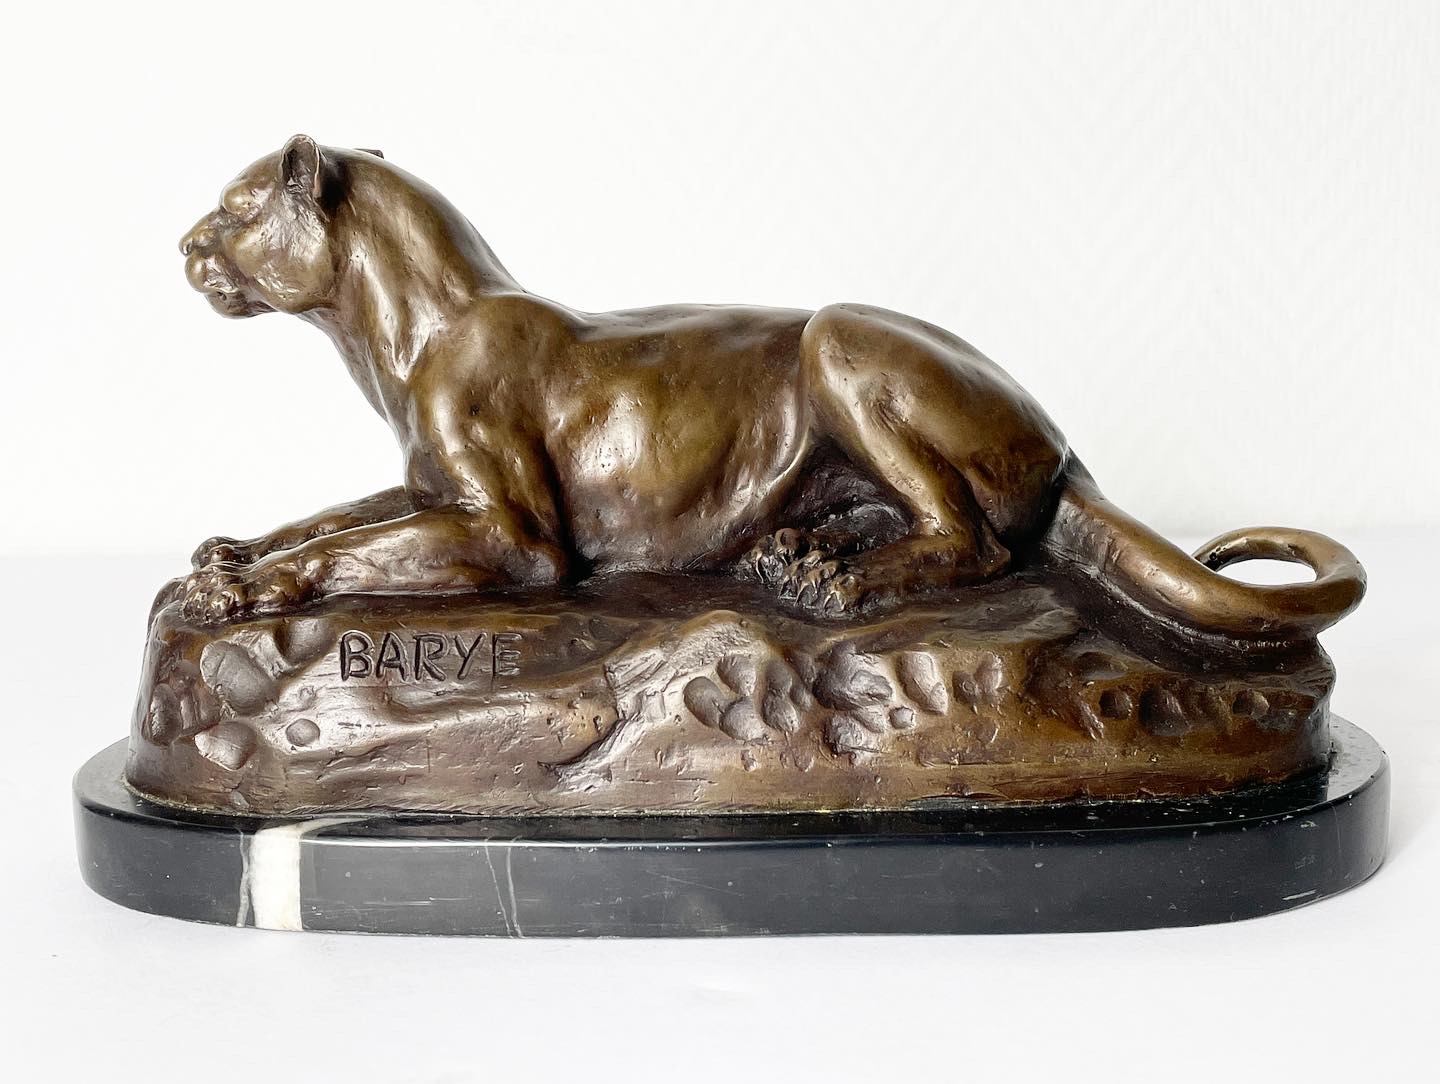 Antoine-louis-barye-lionne-couchée-bronze-animalier-collection-aurore-morisse-affaire-conclue3